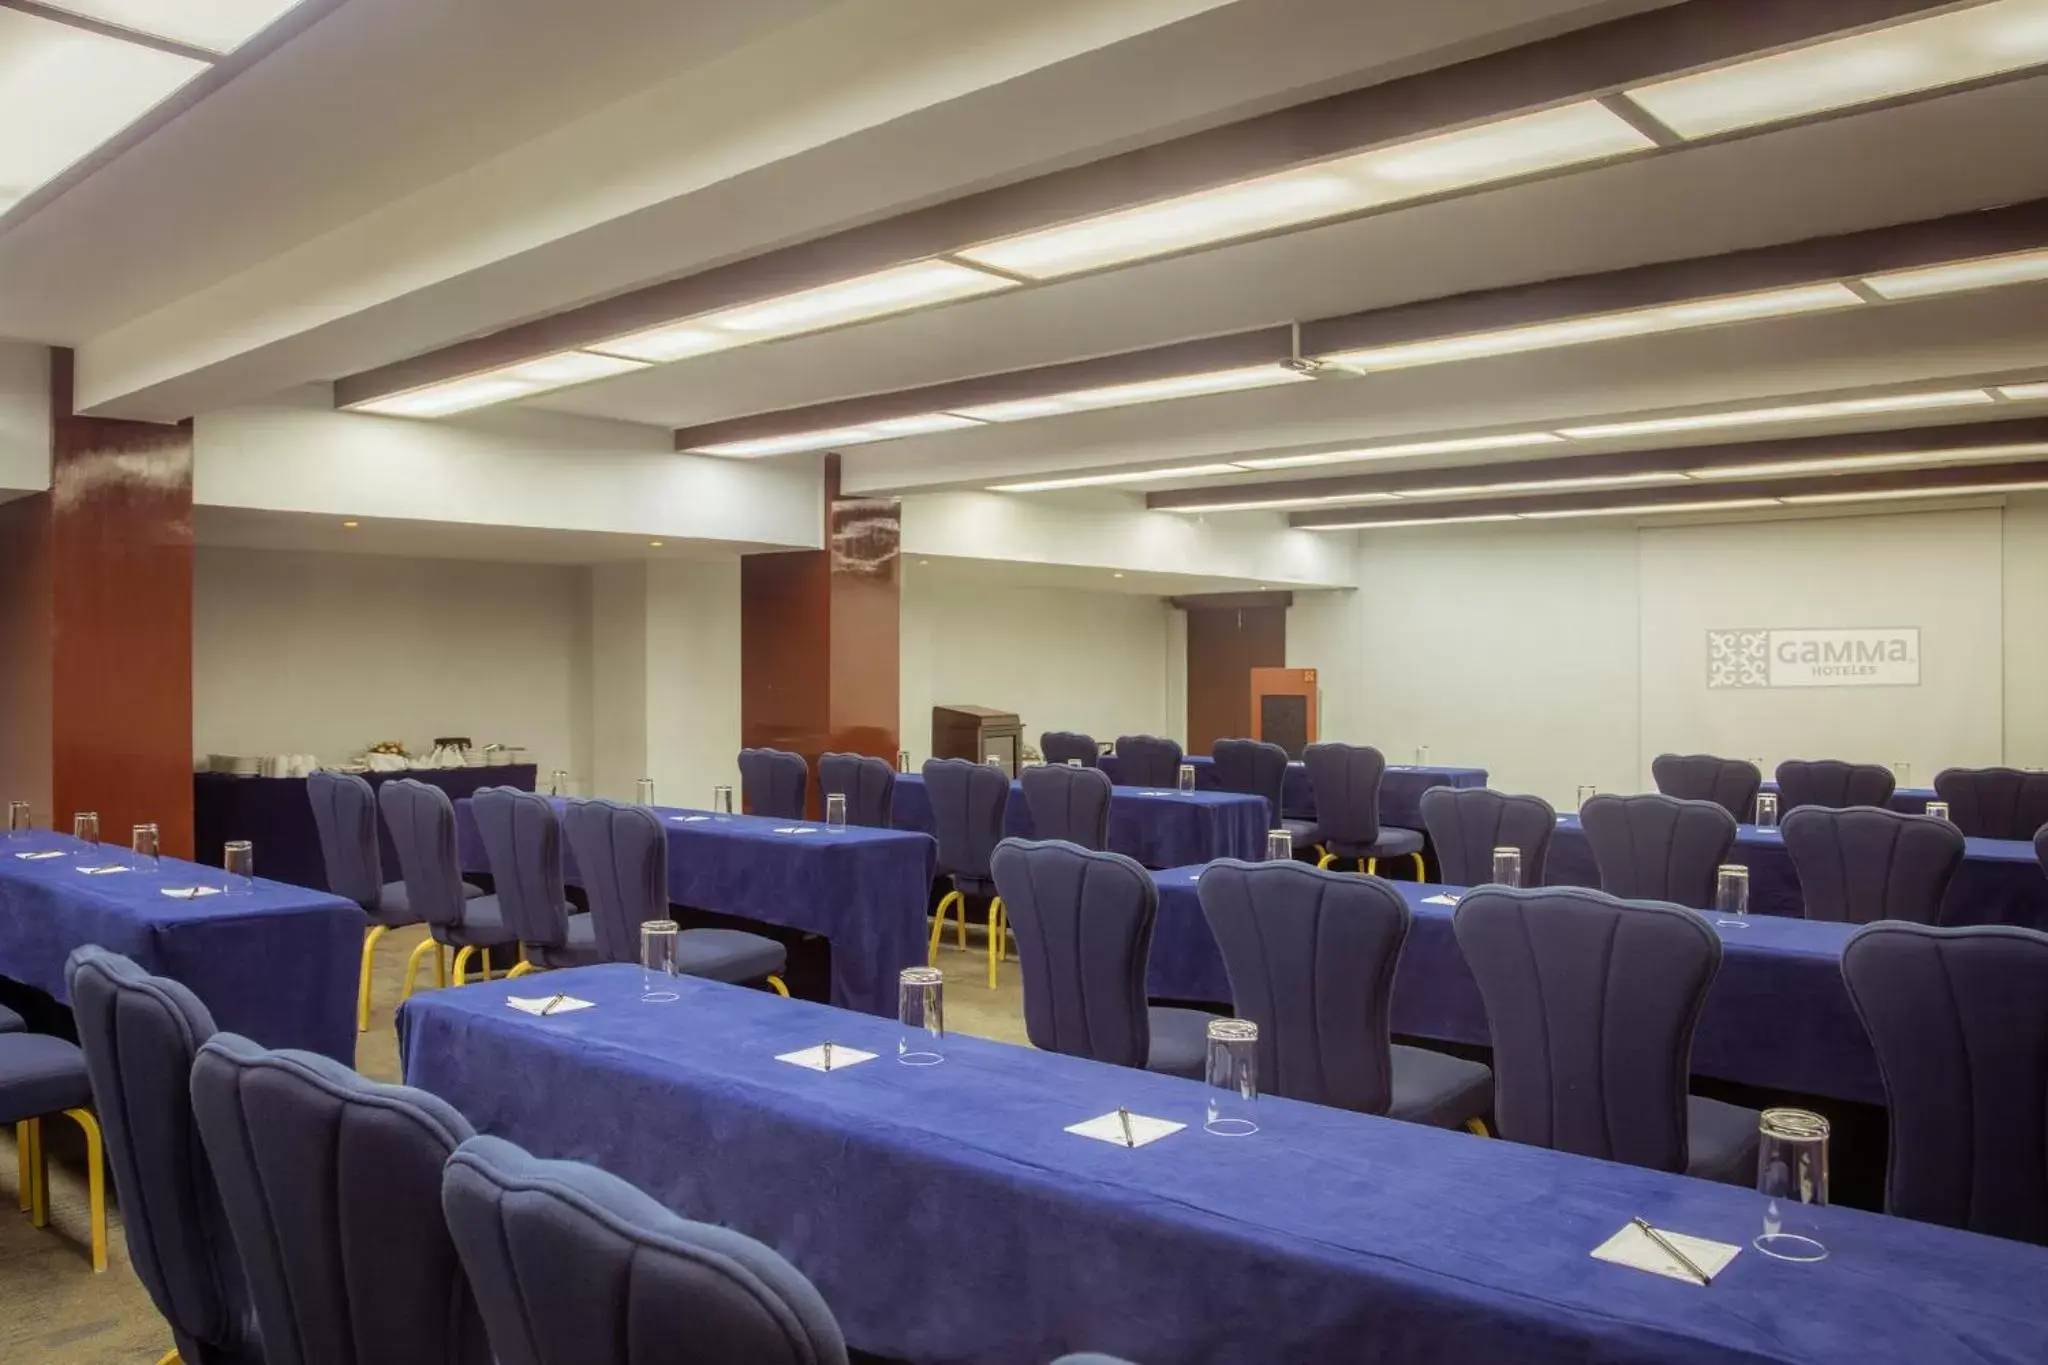 Meeting/conference room in Gamma Merida El Castellano